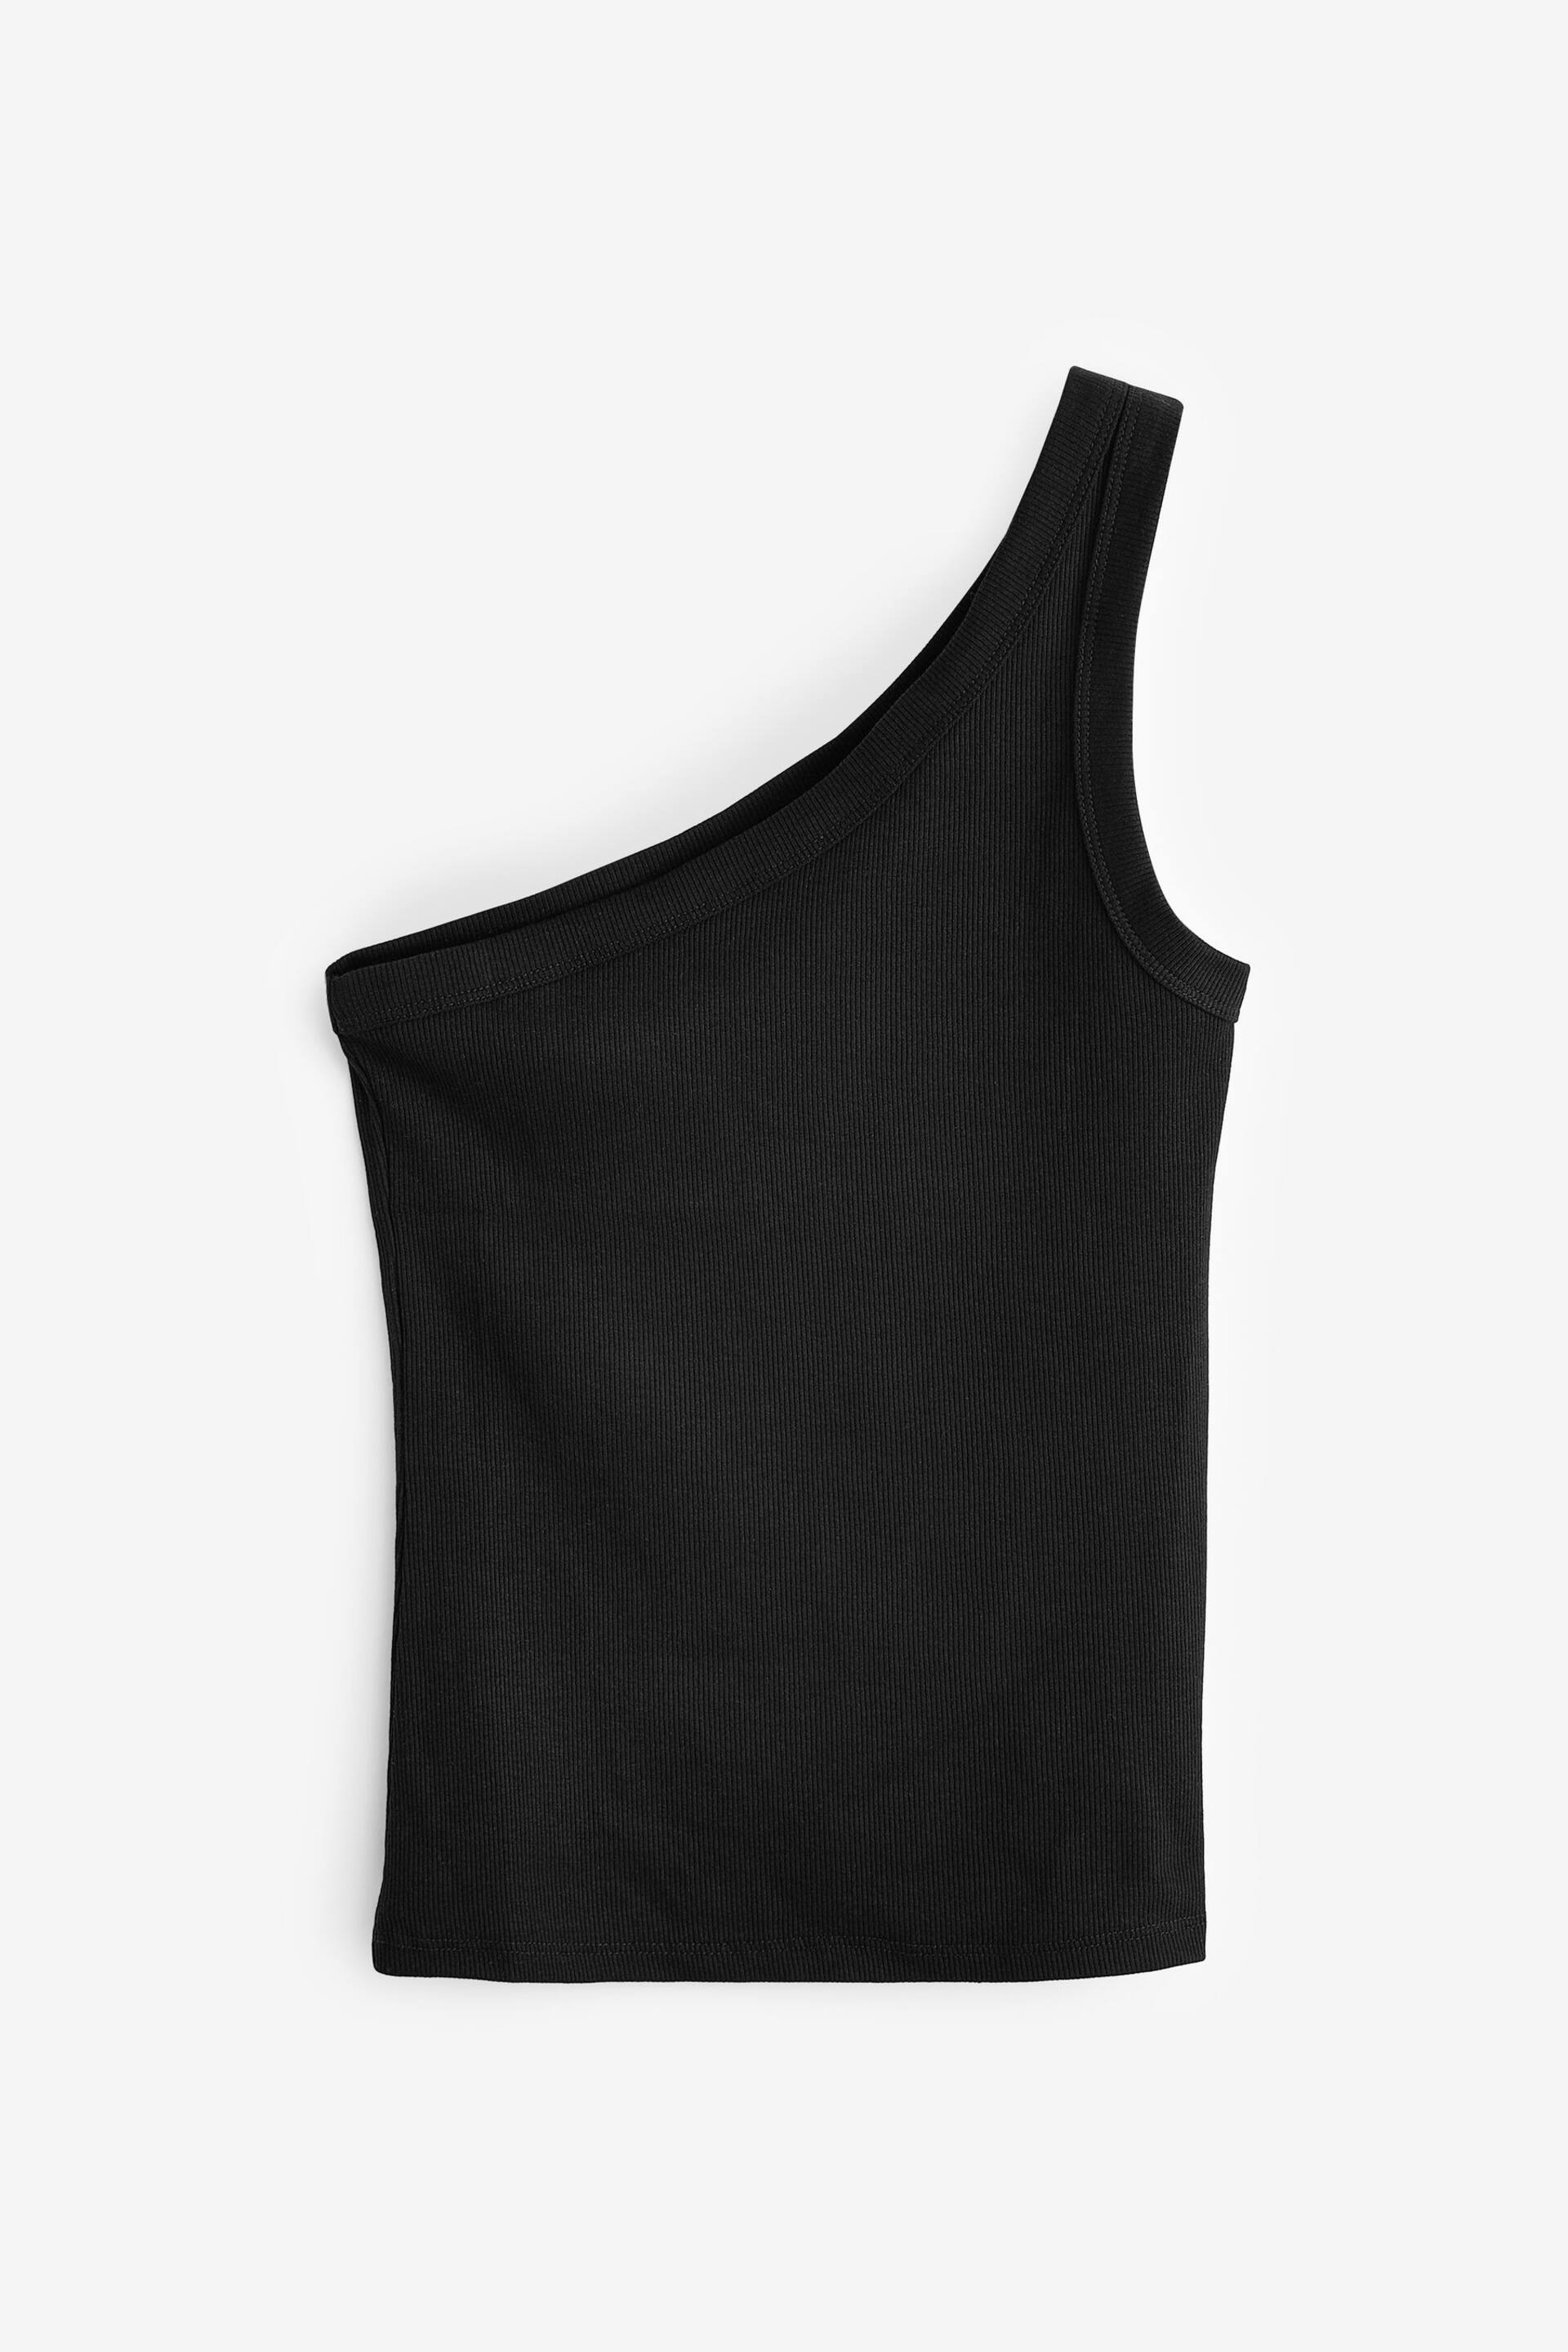 Black One Shoulder Rib Vest Top - Image 5 of 5